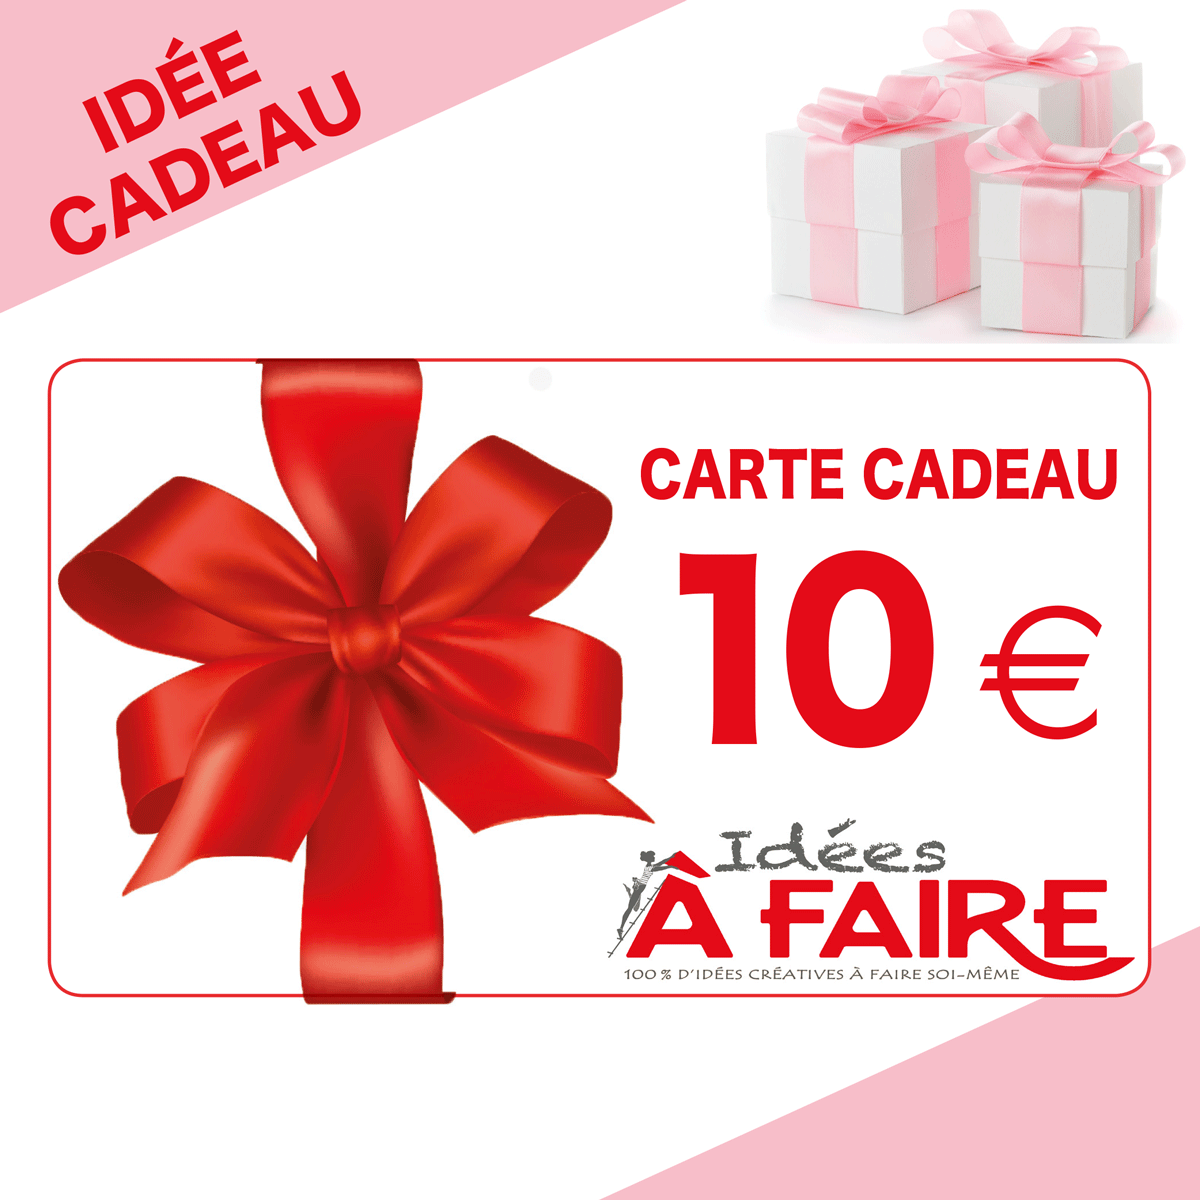 Carte Cadeau 10€ – Idées à Faire magazine